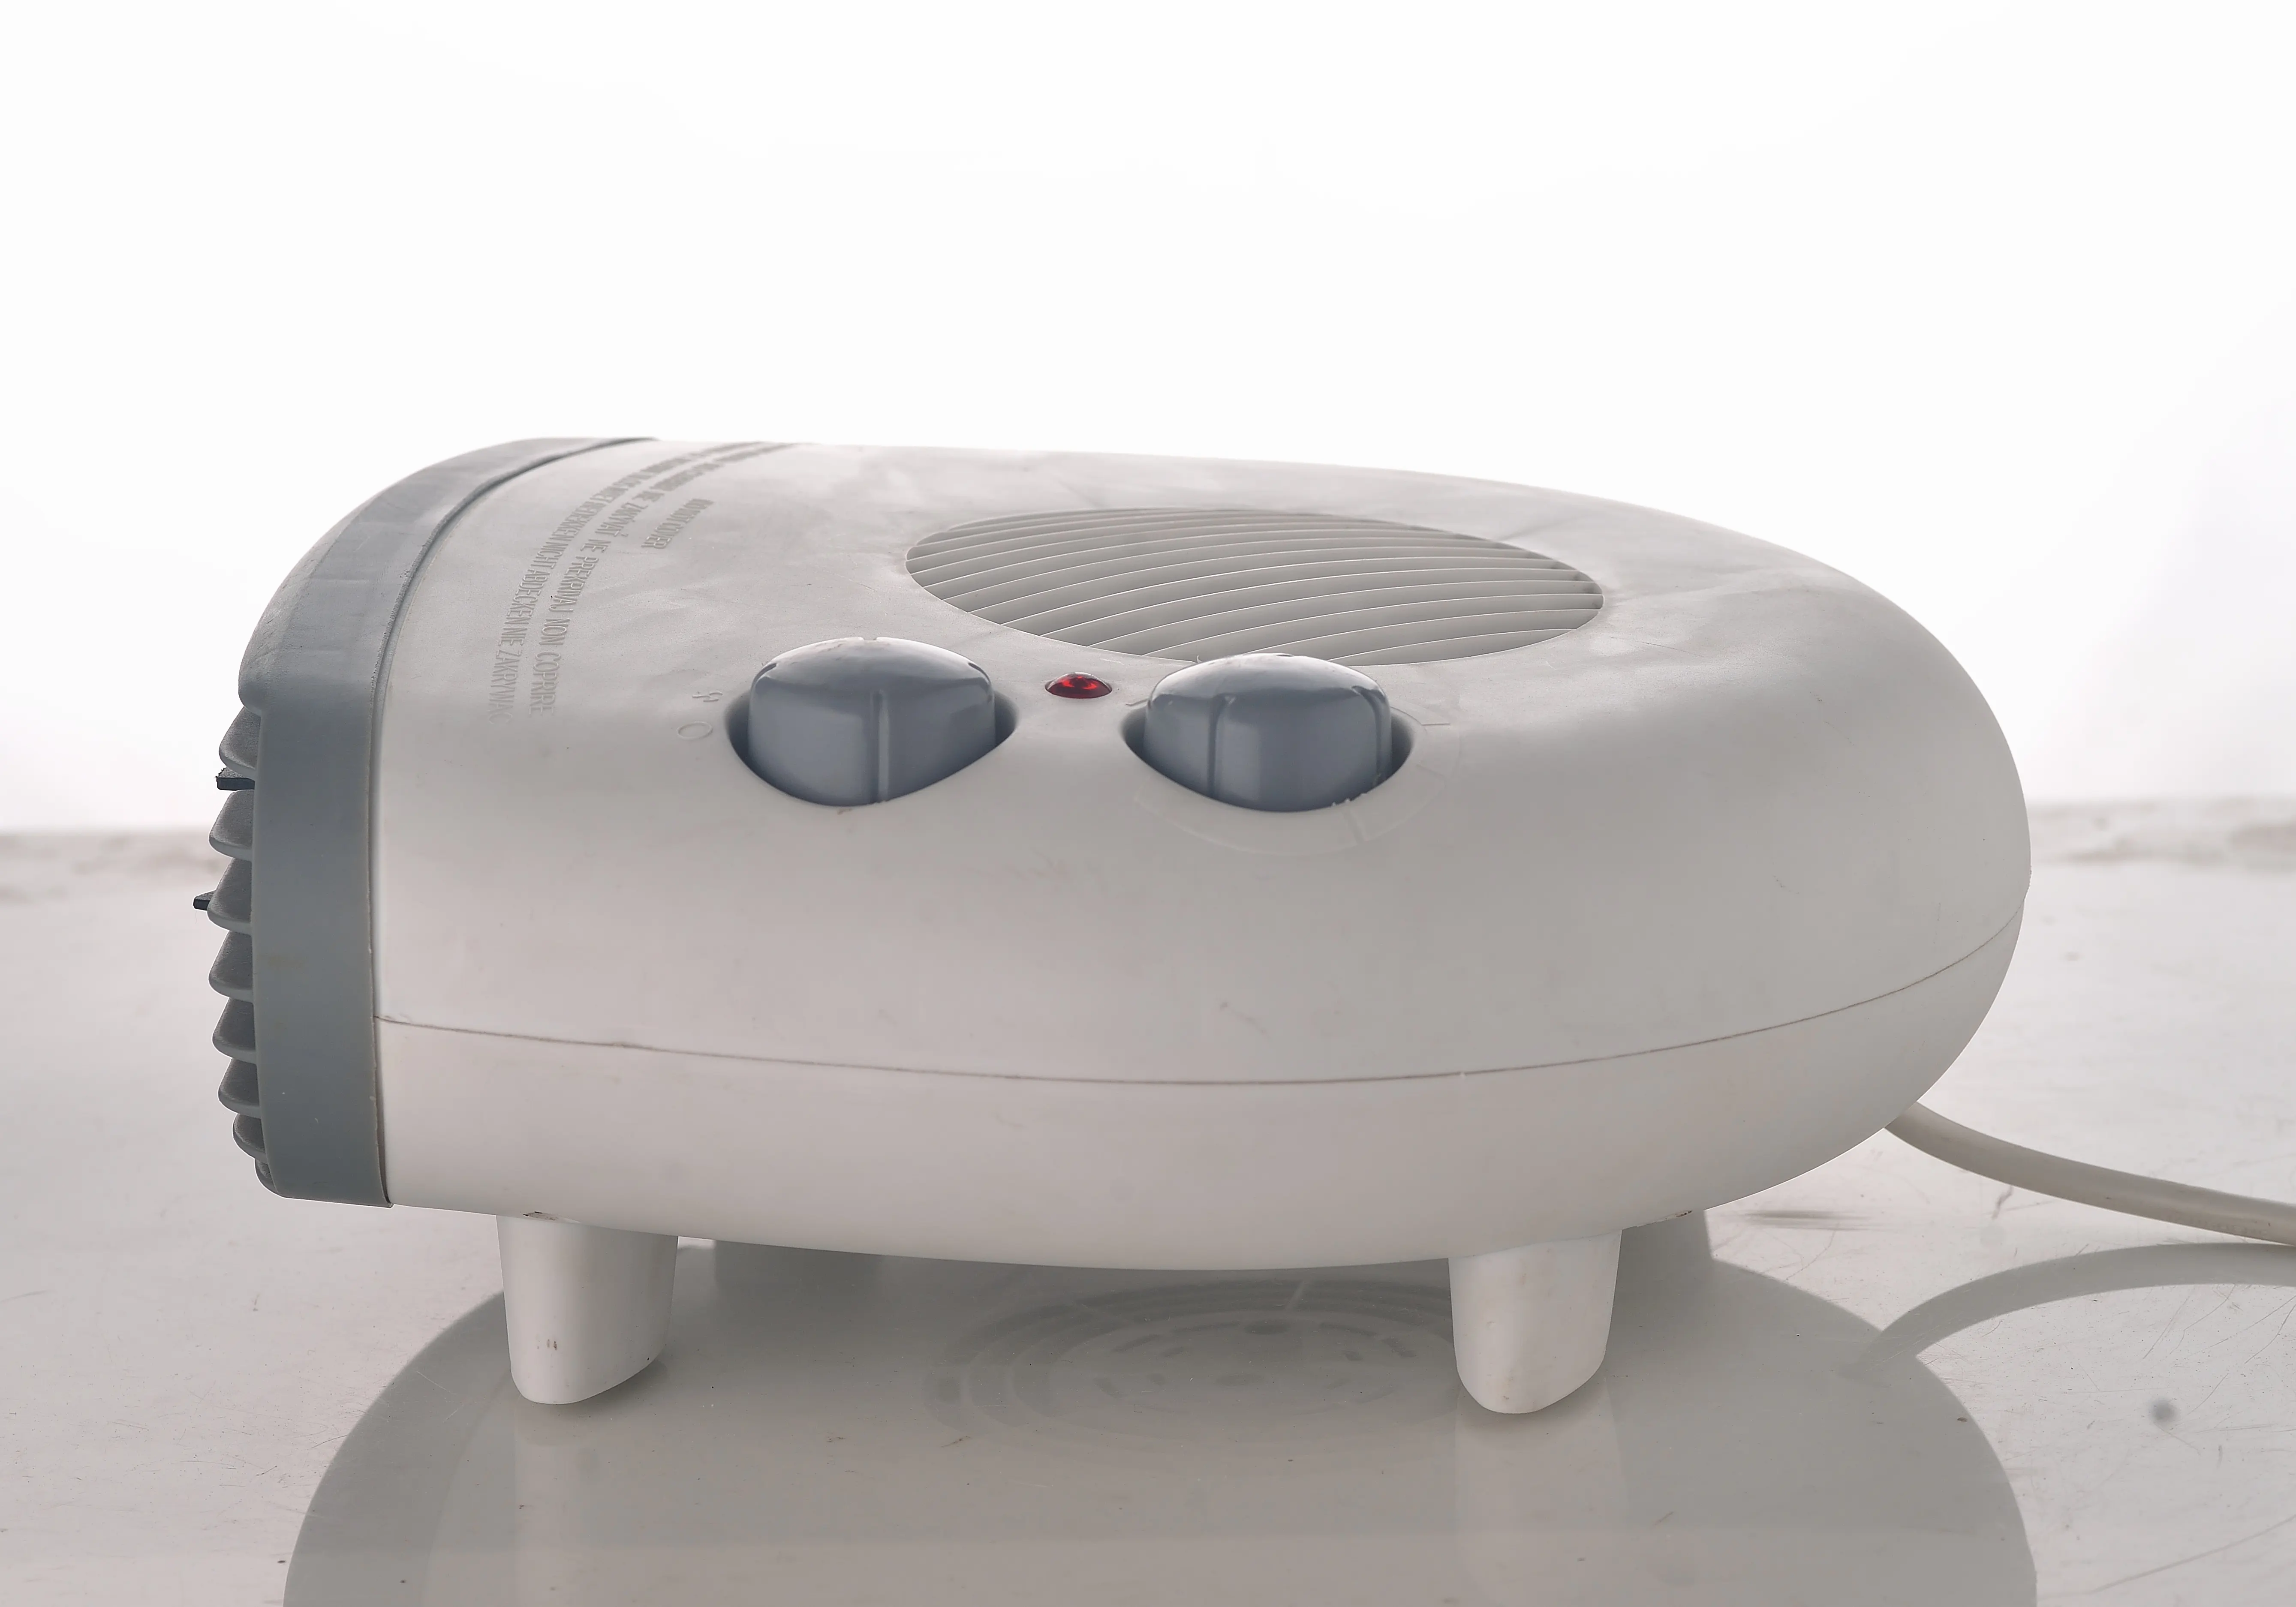 220 V freistehender elektrischer Heizkörper ventilator tragbar Heimgebrauch Bad Wohnzimmer Schlafzimmer einstellbarer Thermostat Überrollschutz